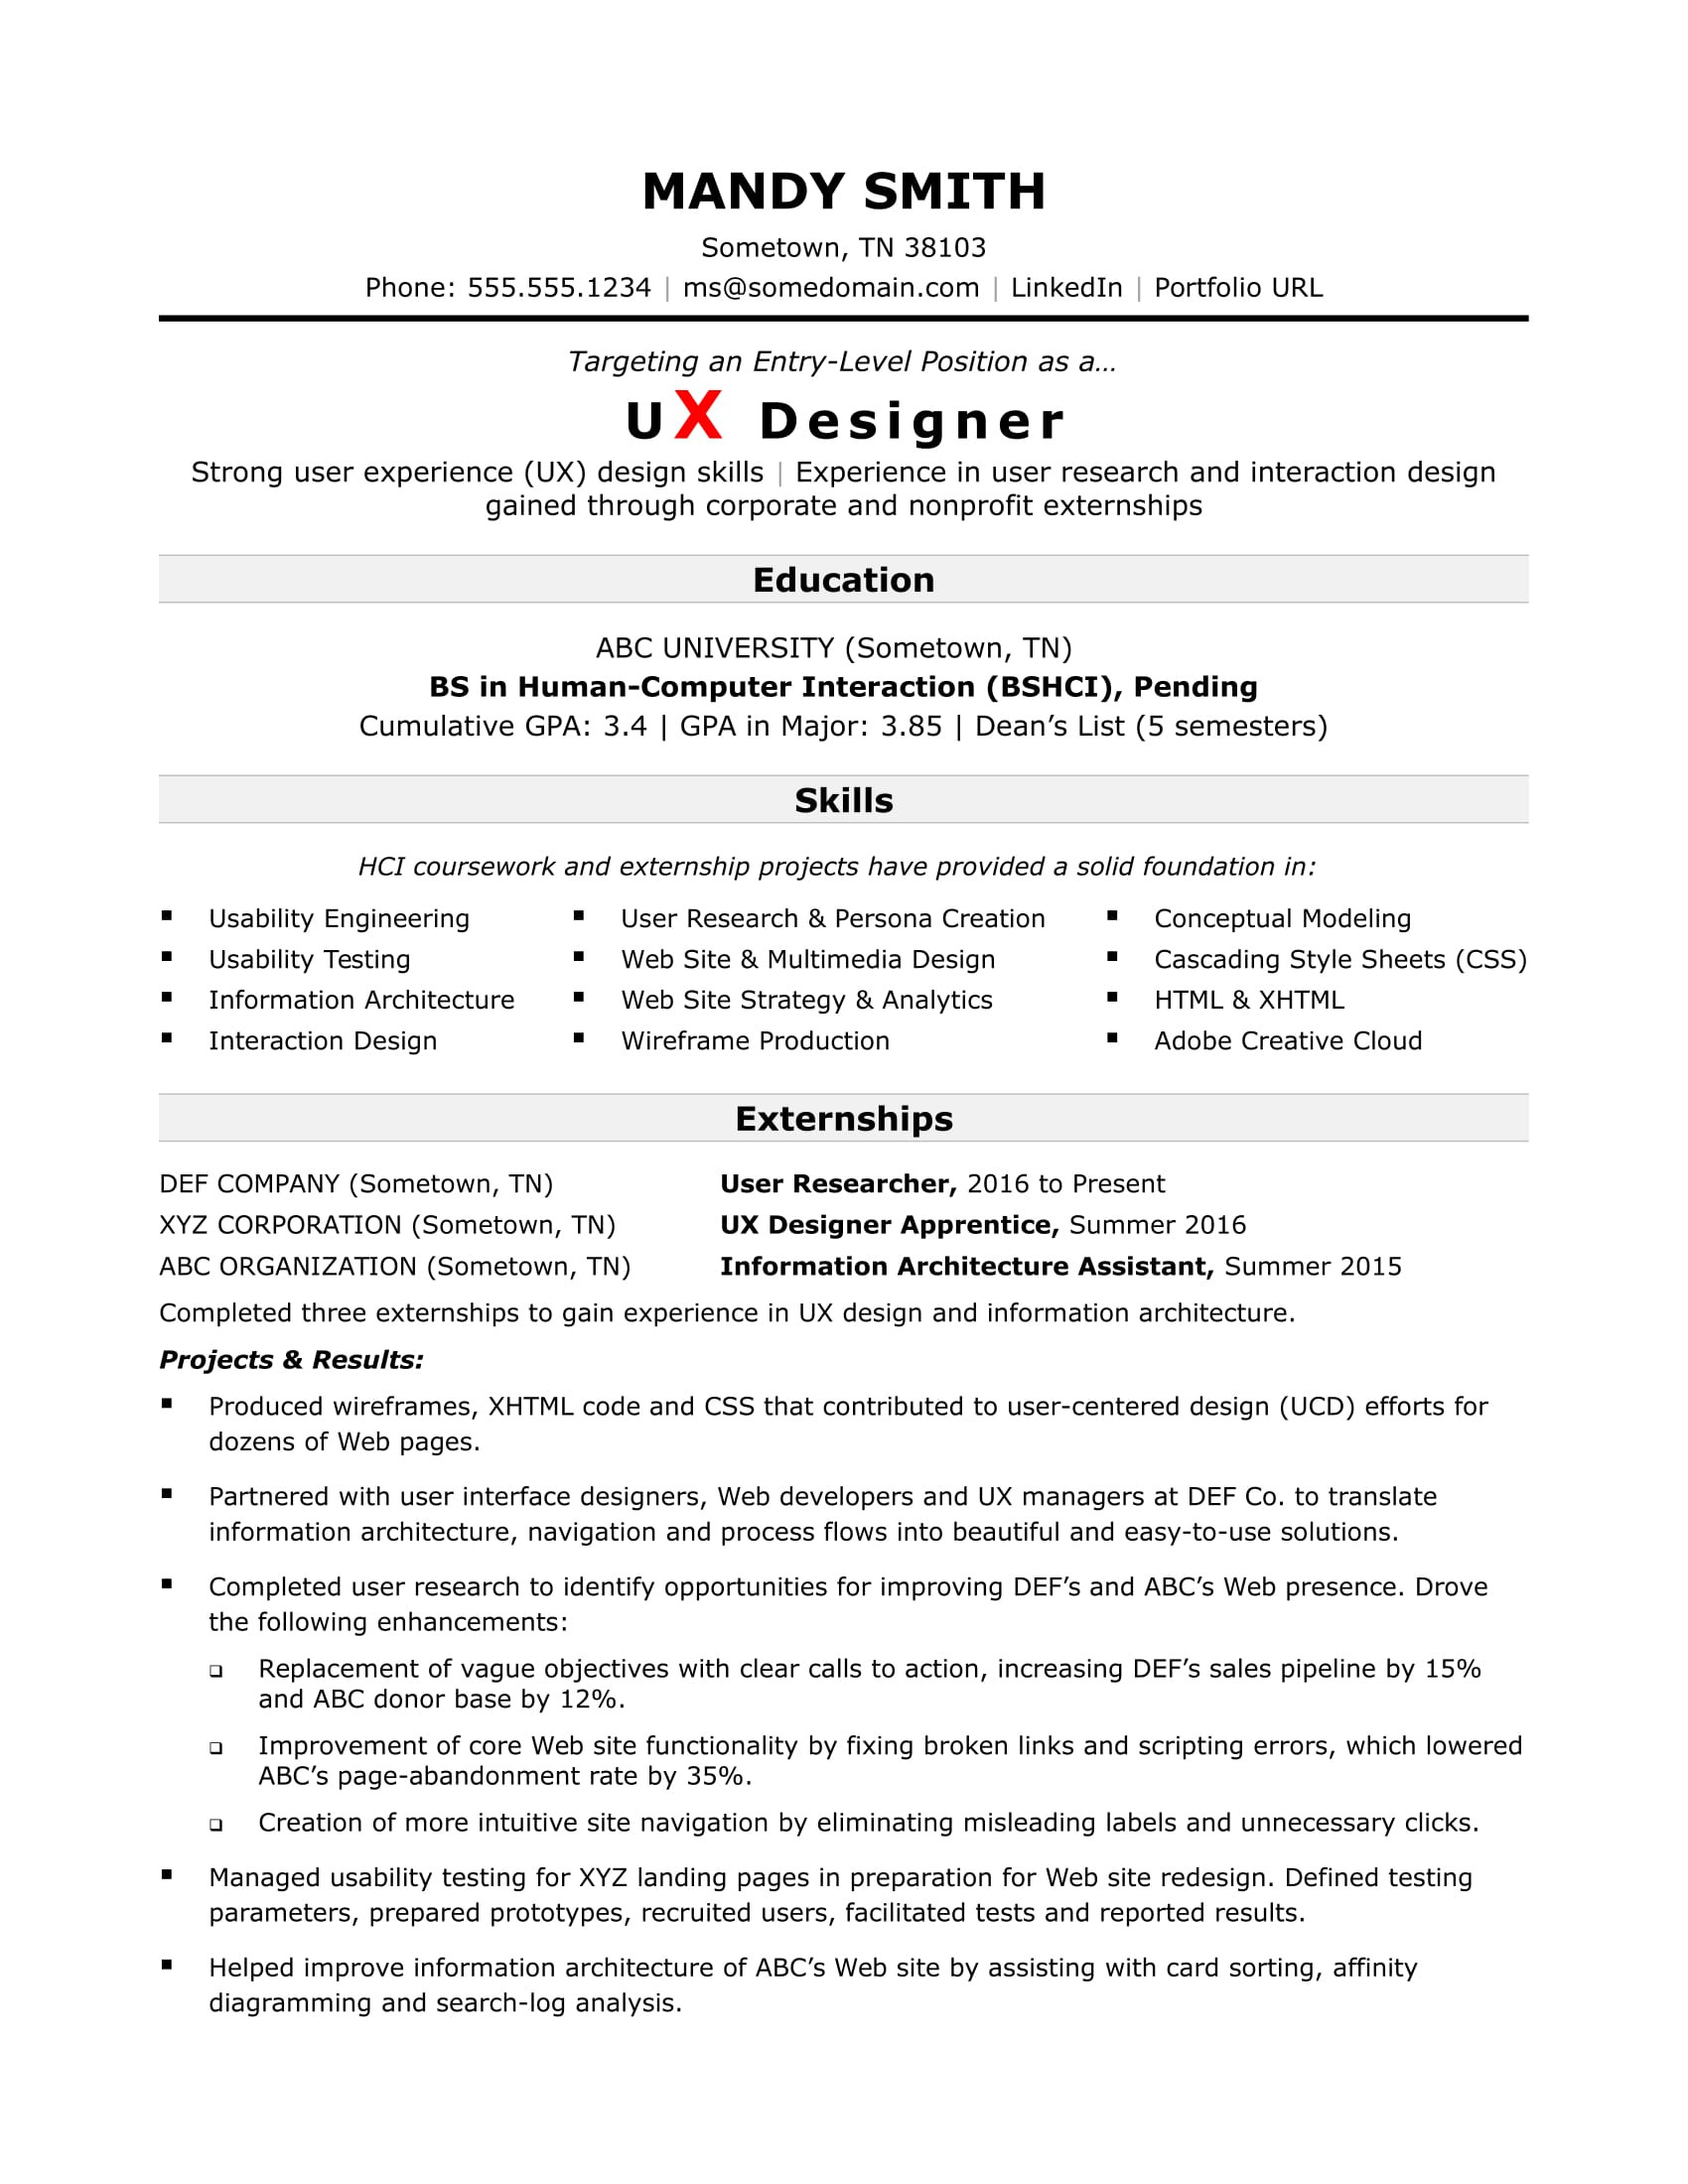 Dean S List On Resume Sample Entry-level Ux Designer Resume Monster.com